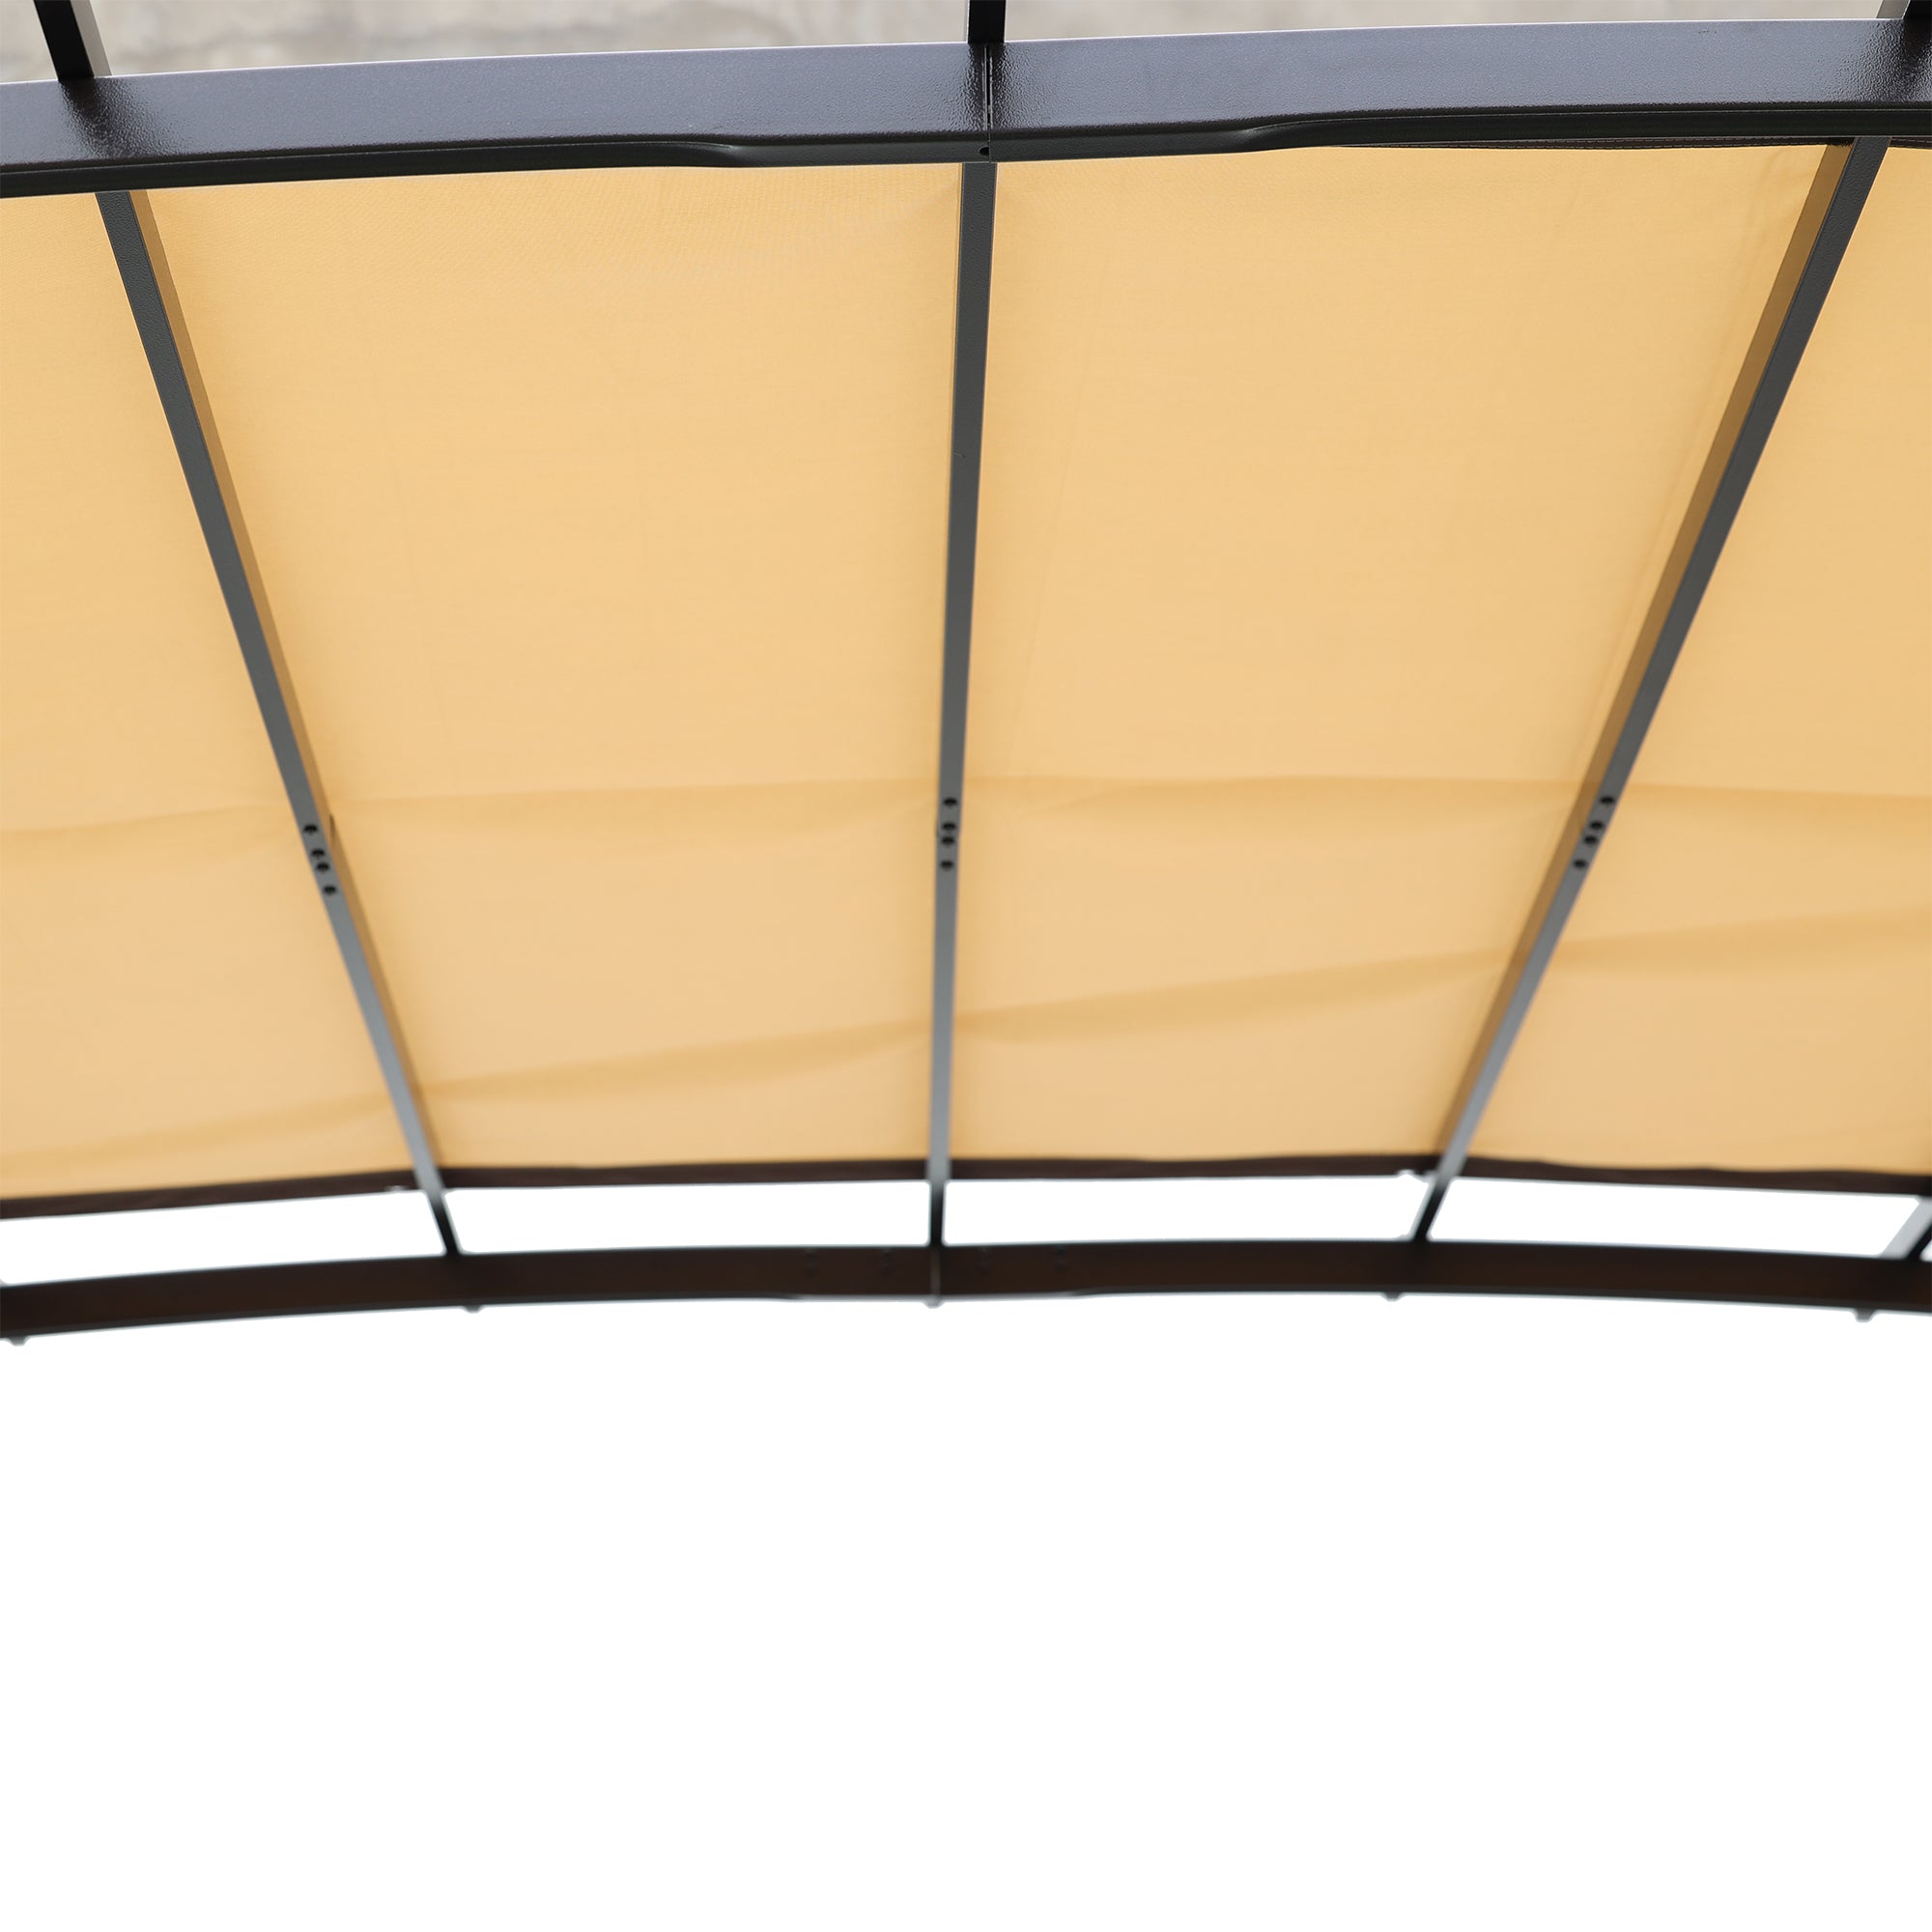 12 x 9 Ft Outdoor Pergola Patio Gazebo,Retractable beige+brown-steel